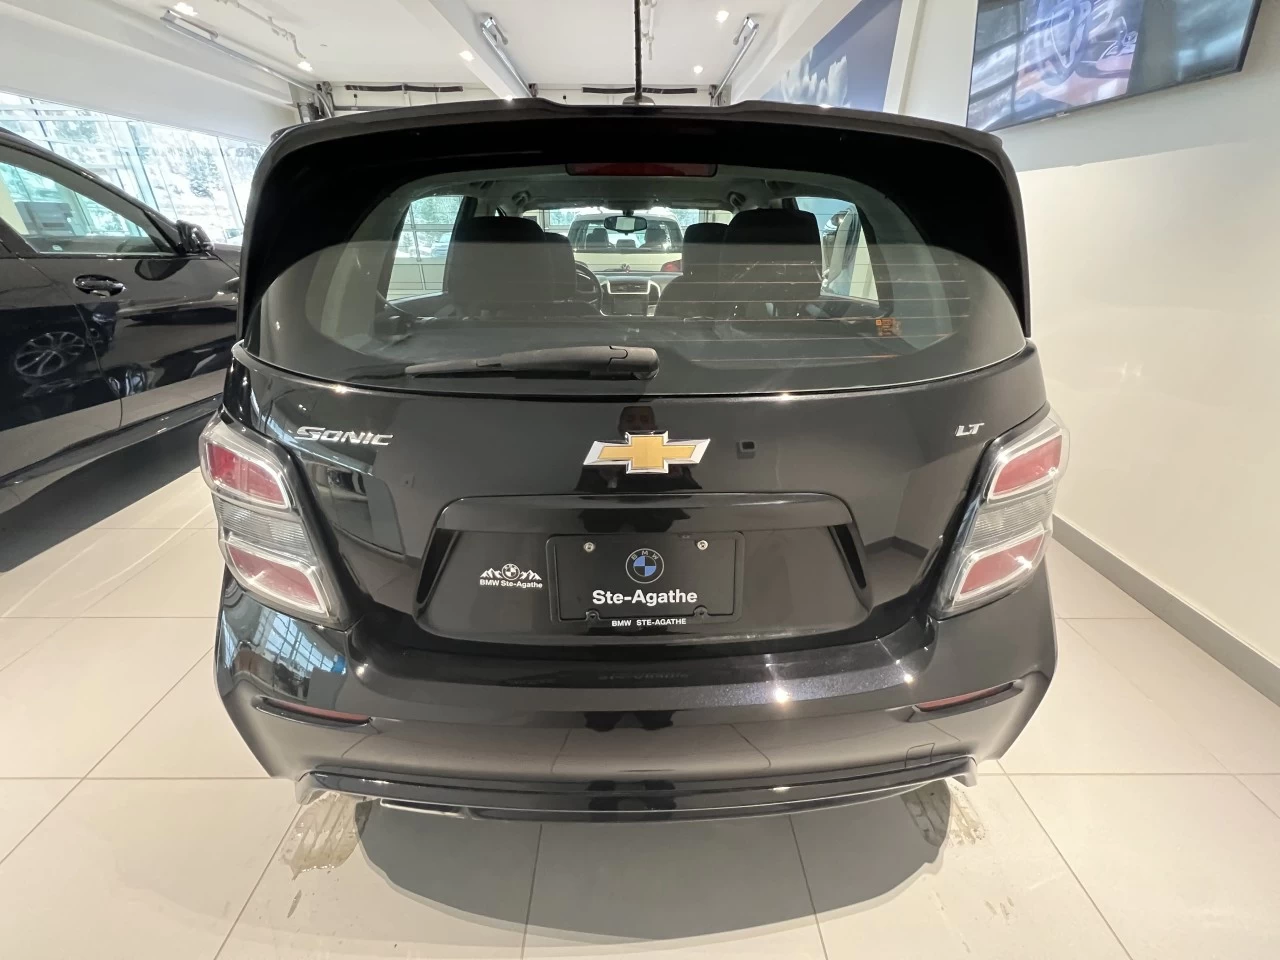 2017 Chevrolet Sonic LT Main Image